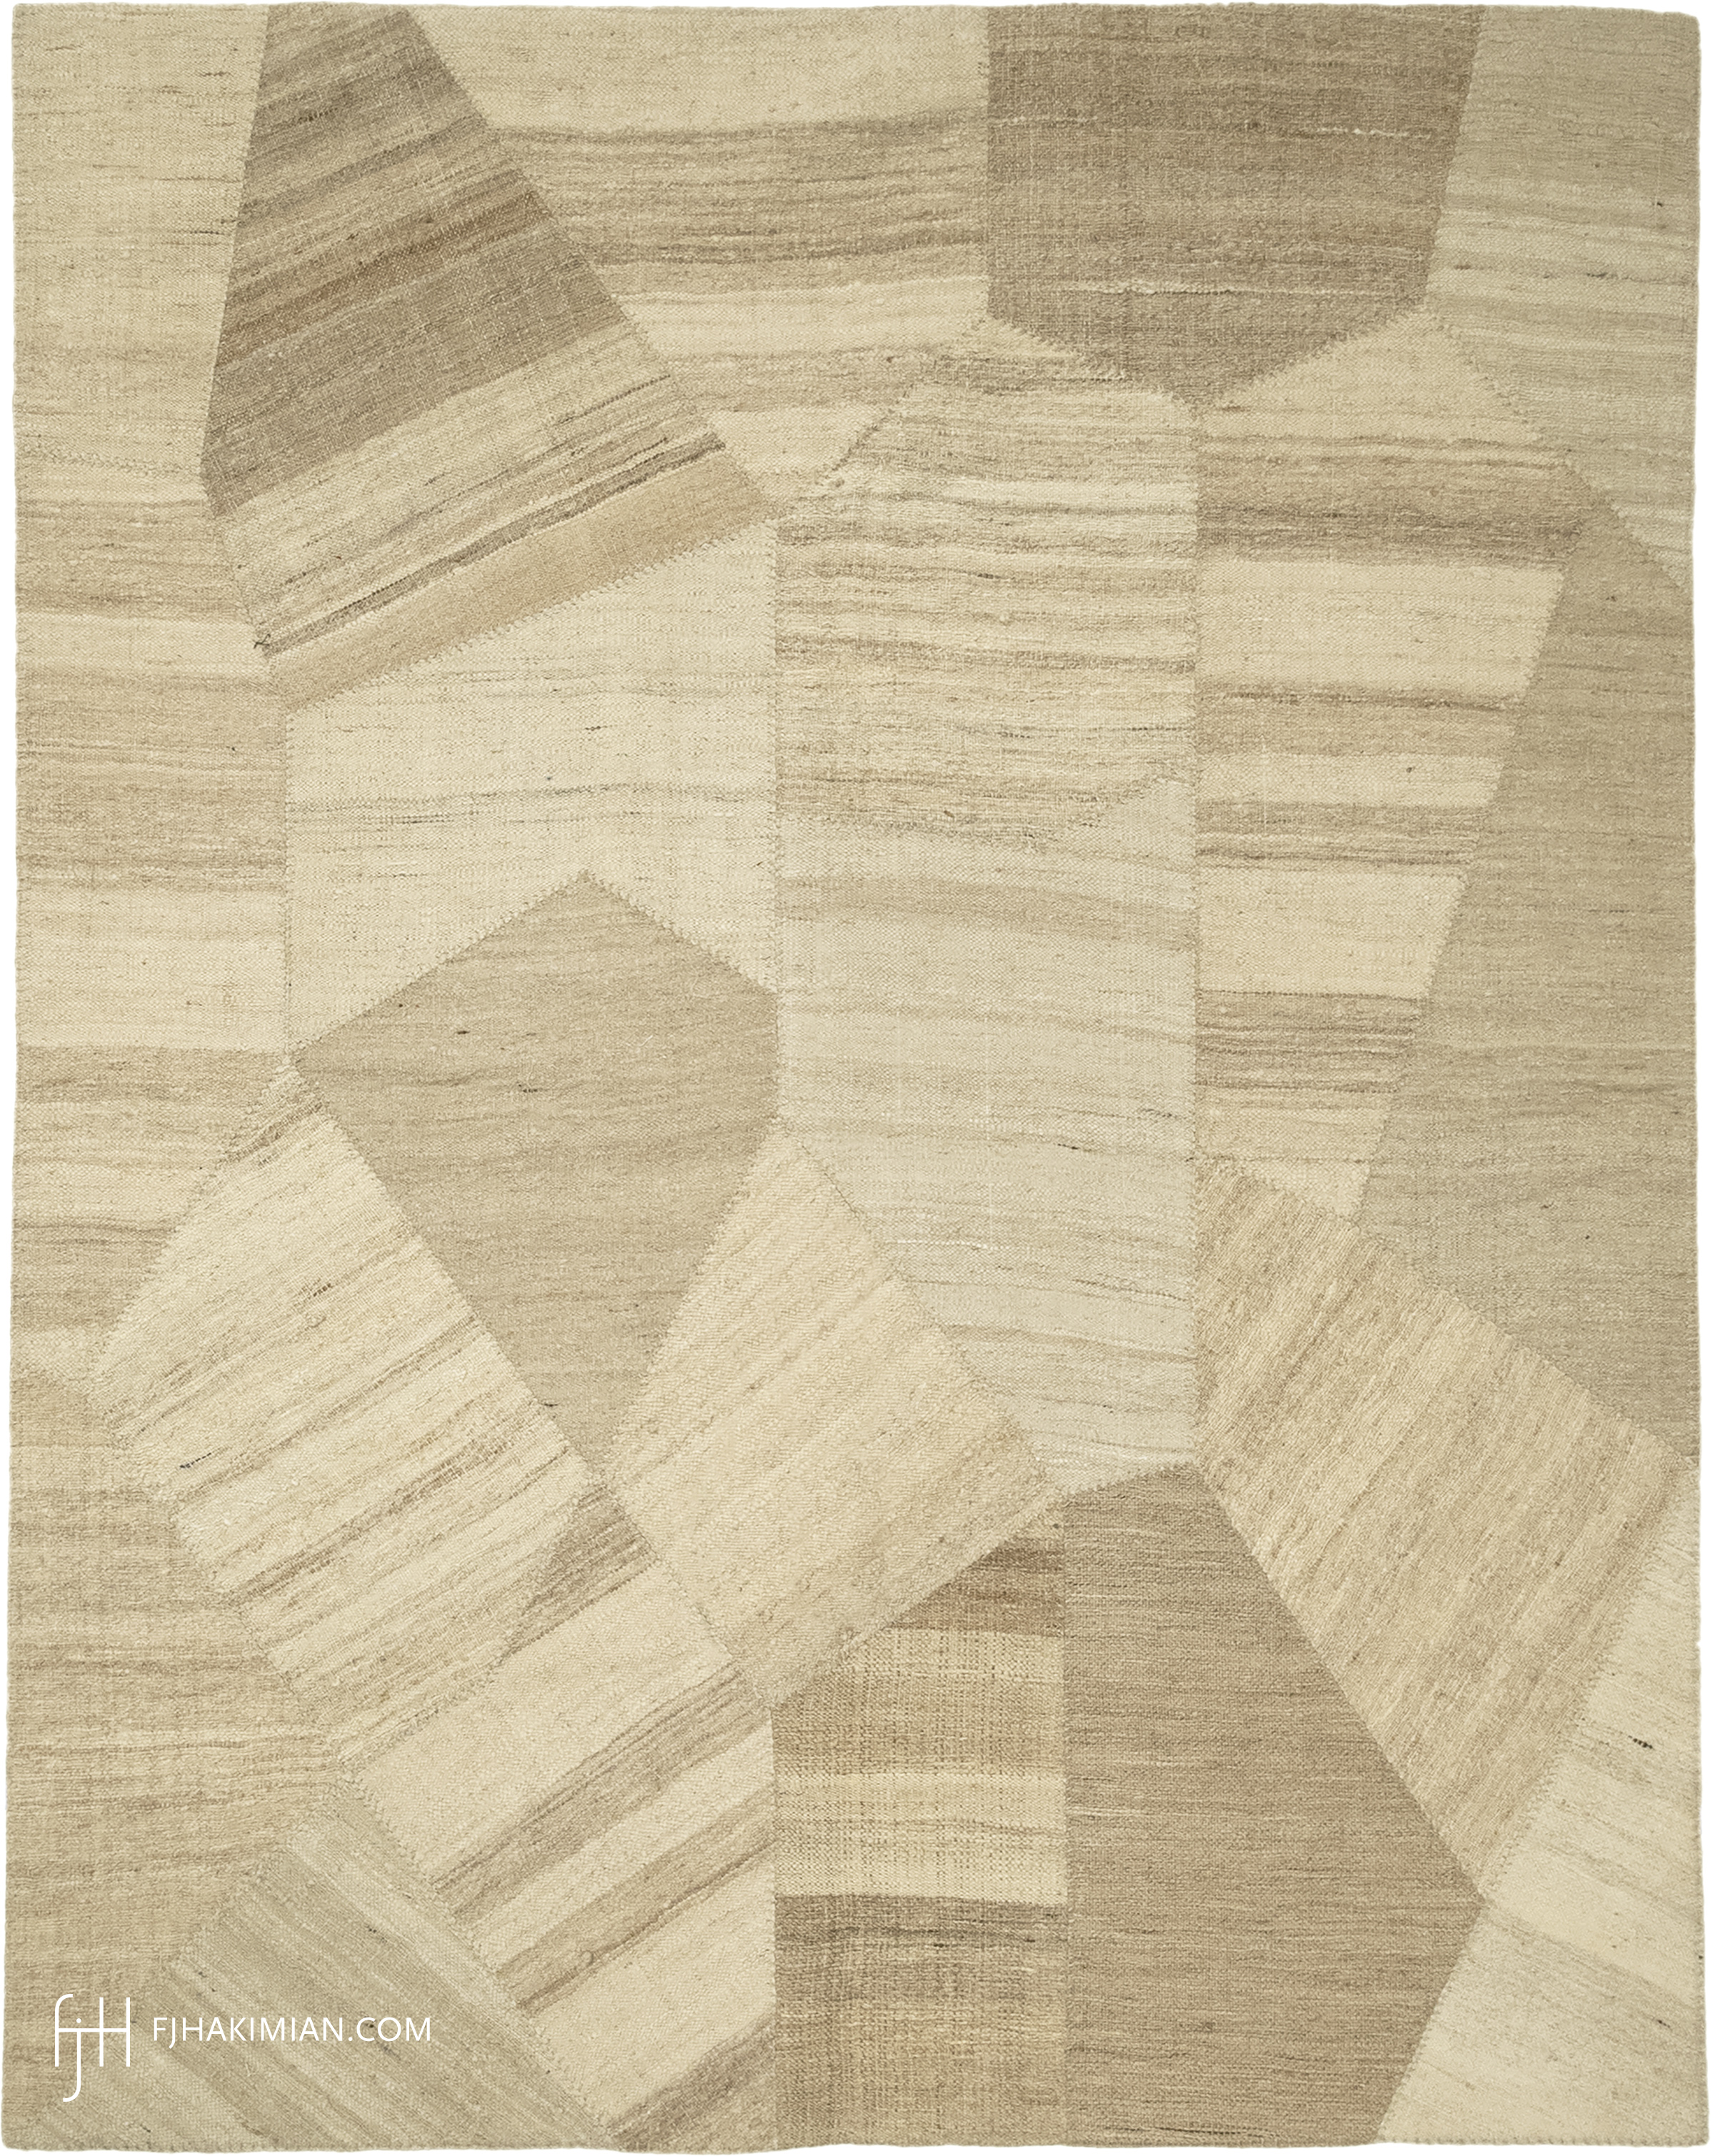 FJ Hakimian | 37001 | Custom Carpet